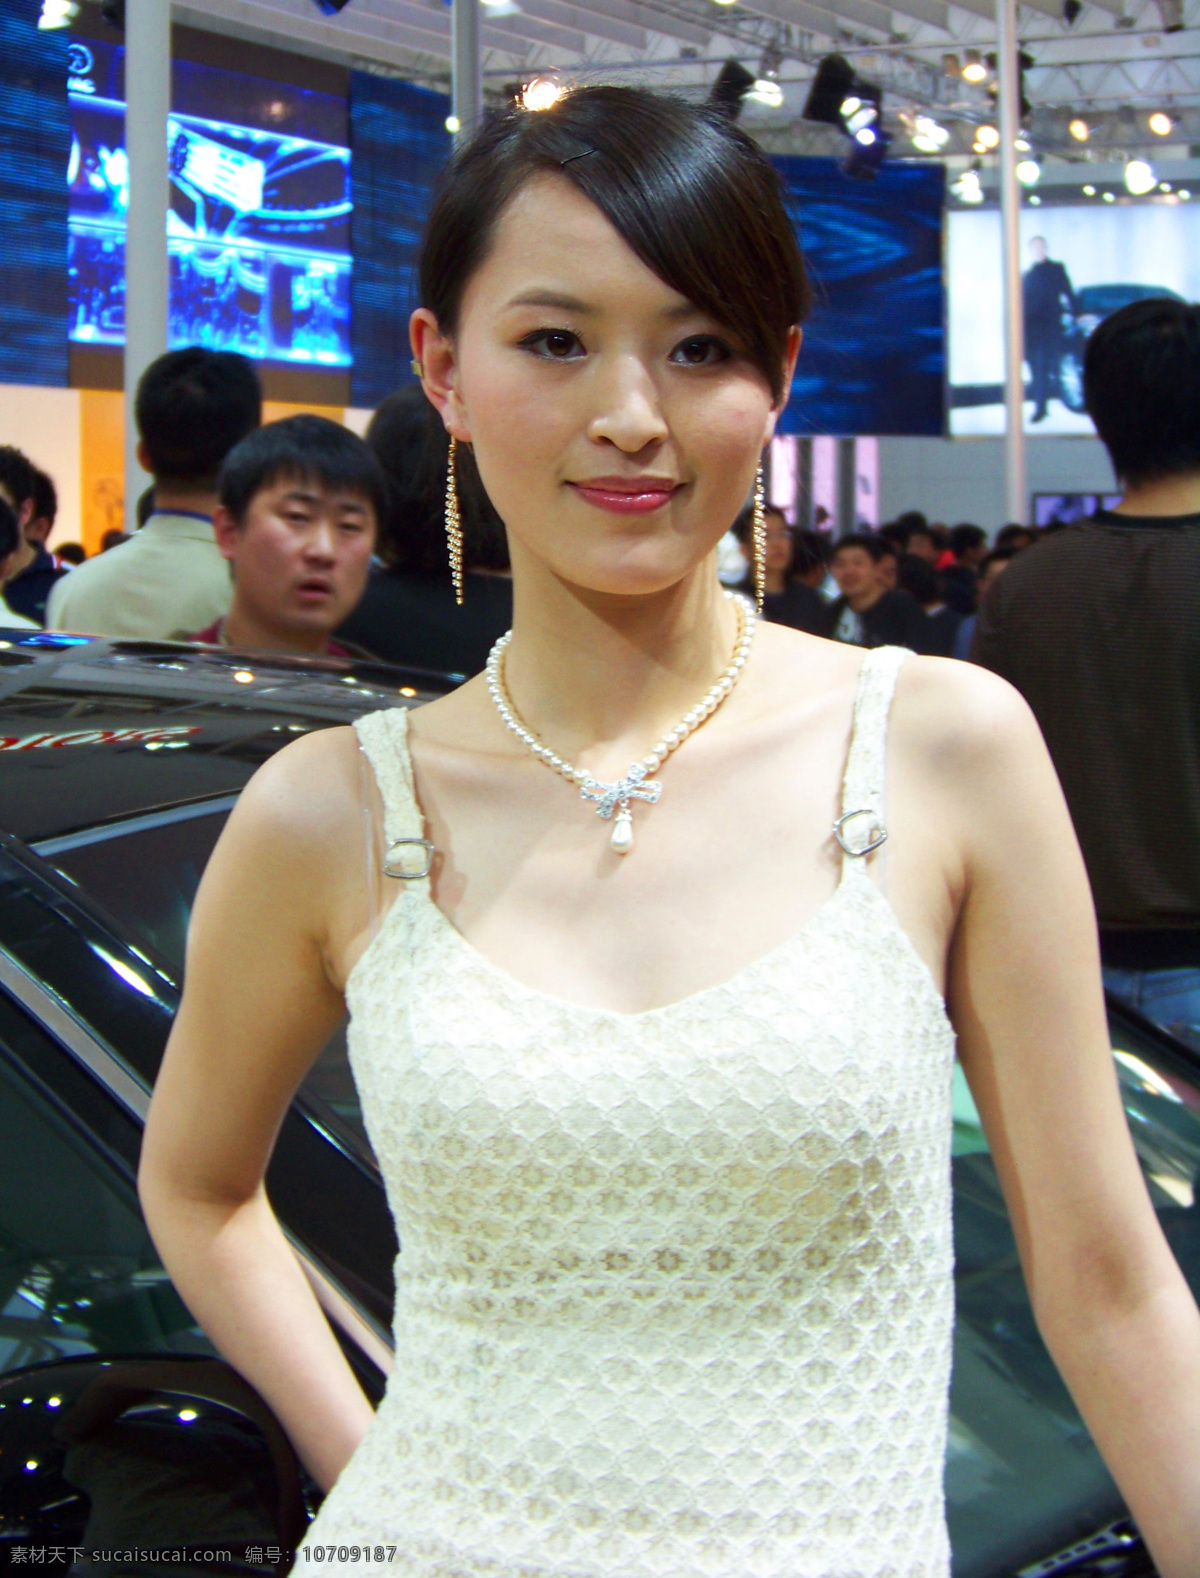 2008 年 北京 国际 车展 模特 肖像 车展模特 职业人物 人物图库